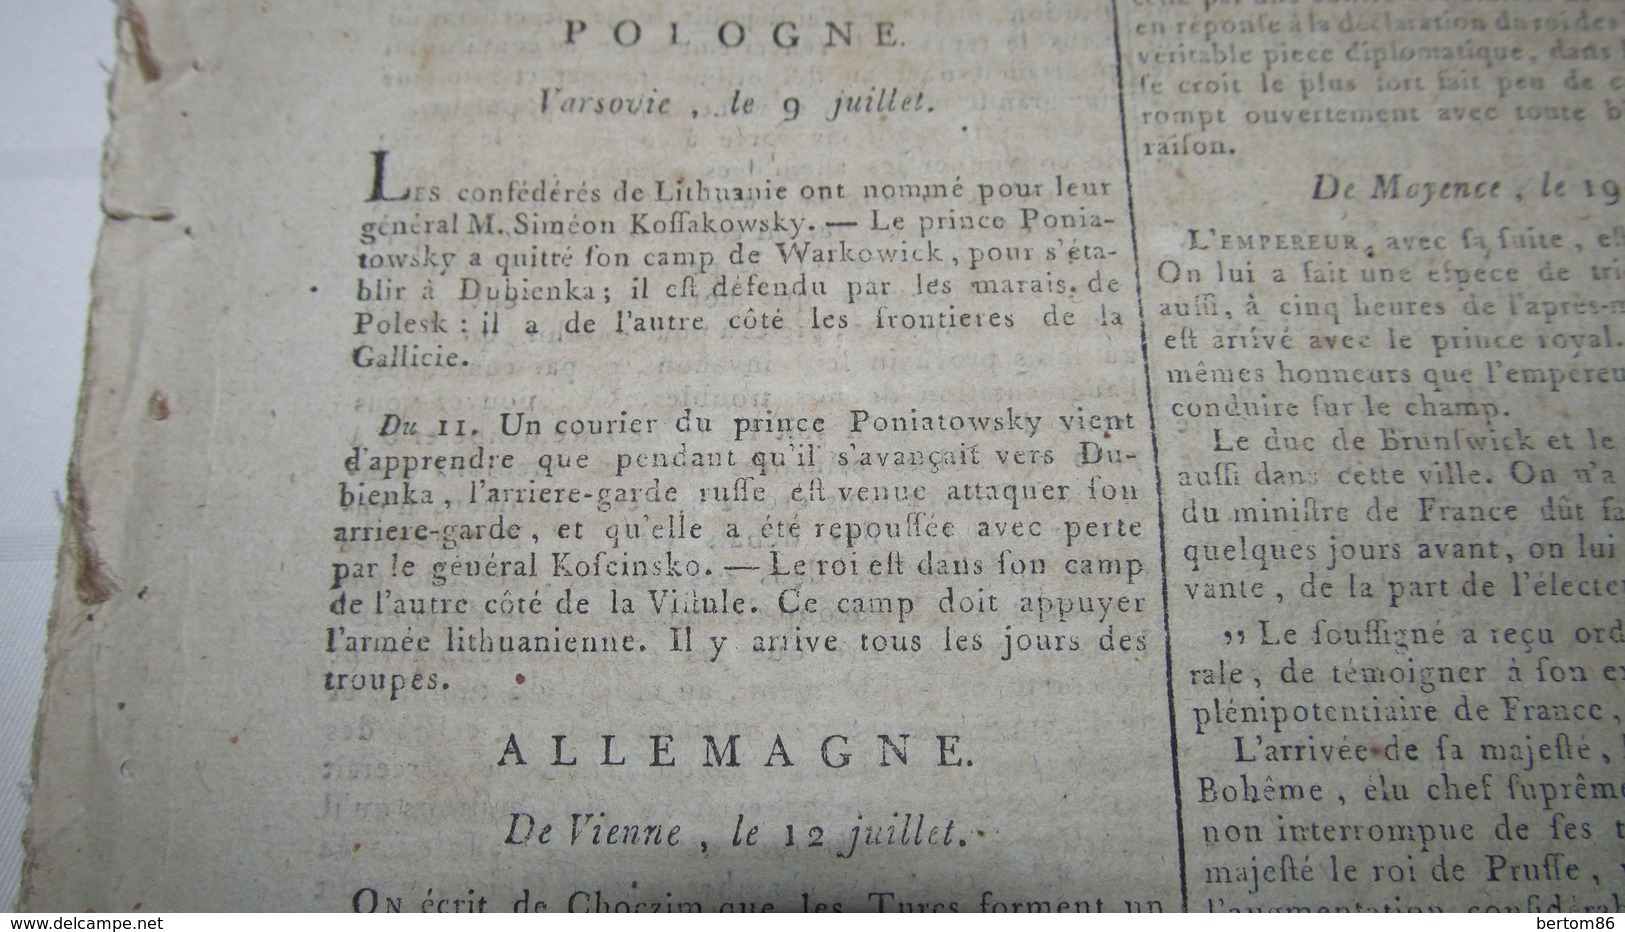 POLOGNE - PETITES NOUVELLES DE LA POLOGNE ET DU PRINCE PONATOWSKI - JUILLET 1792. - Newspapers - Before 1800